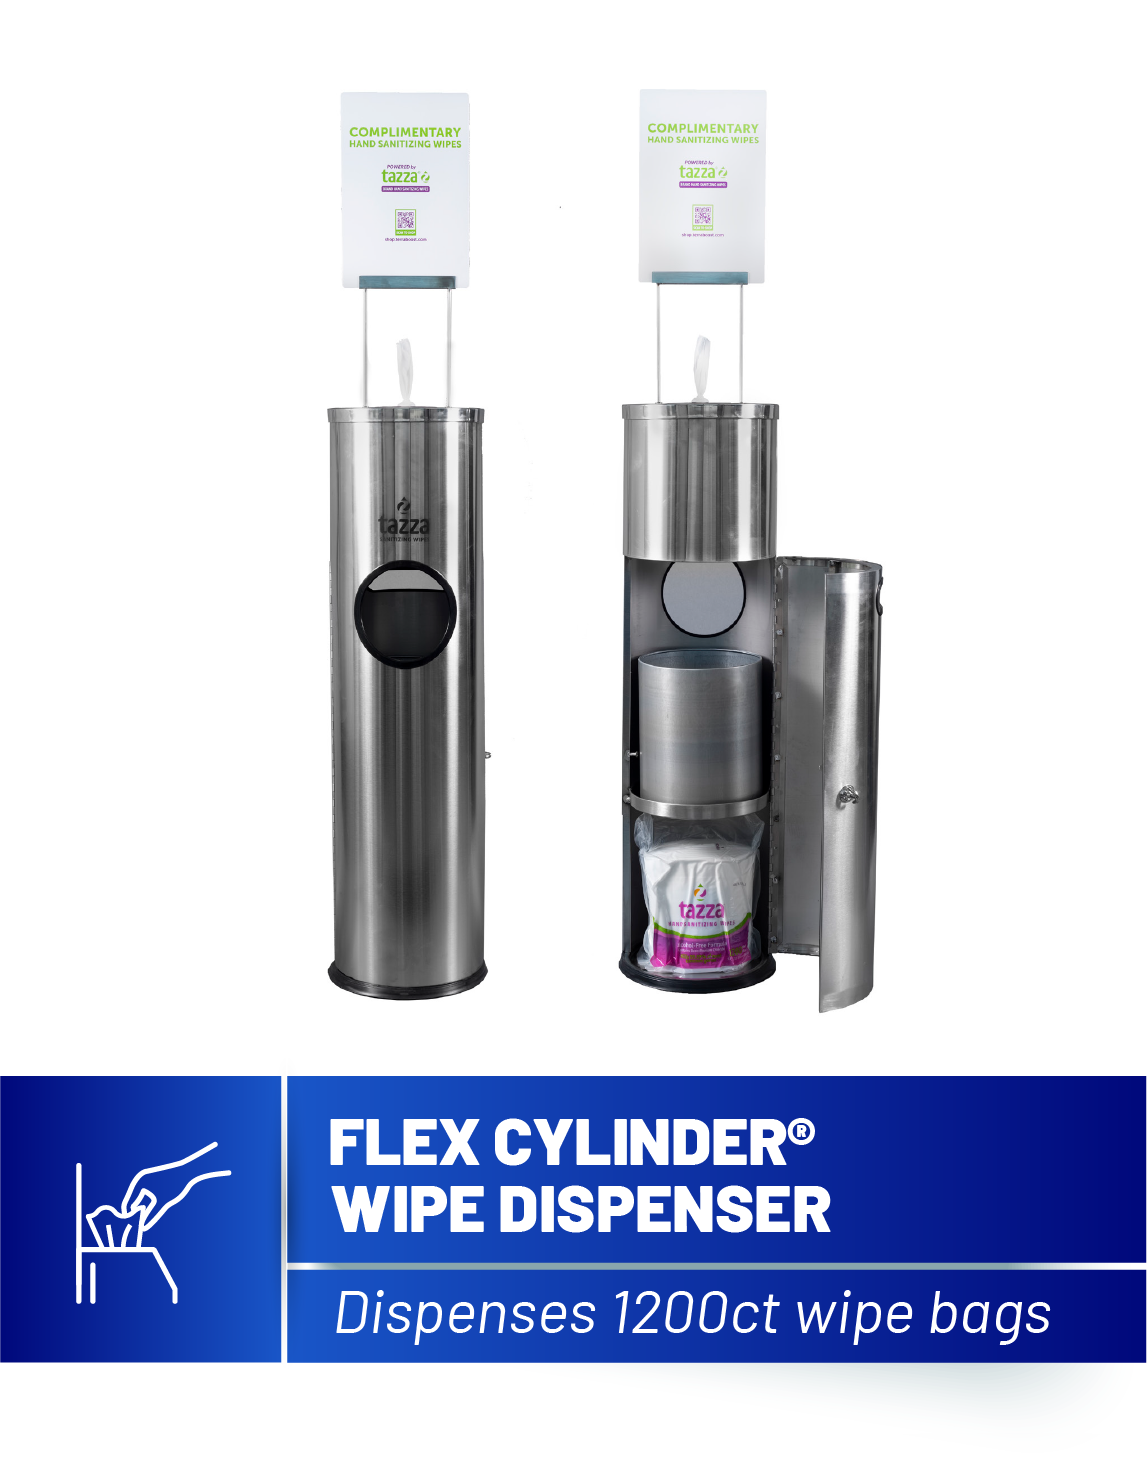 Flex Cylinder Stainless Steel Wipe Dispenser